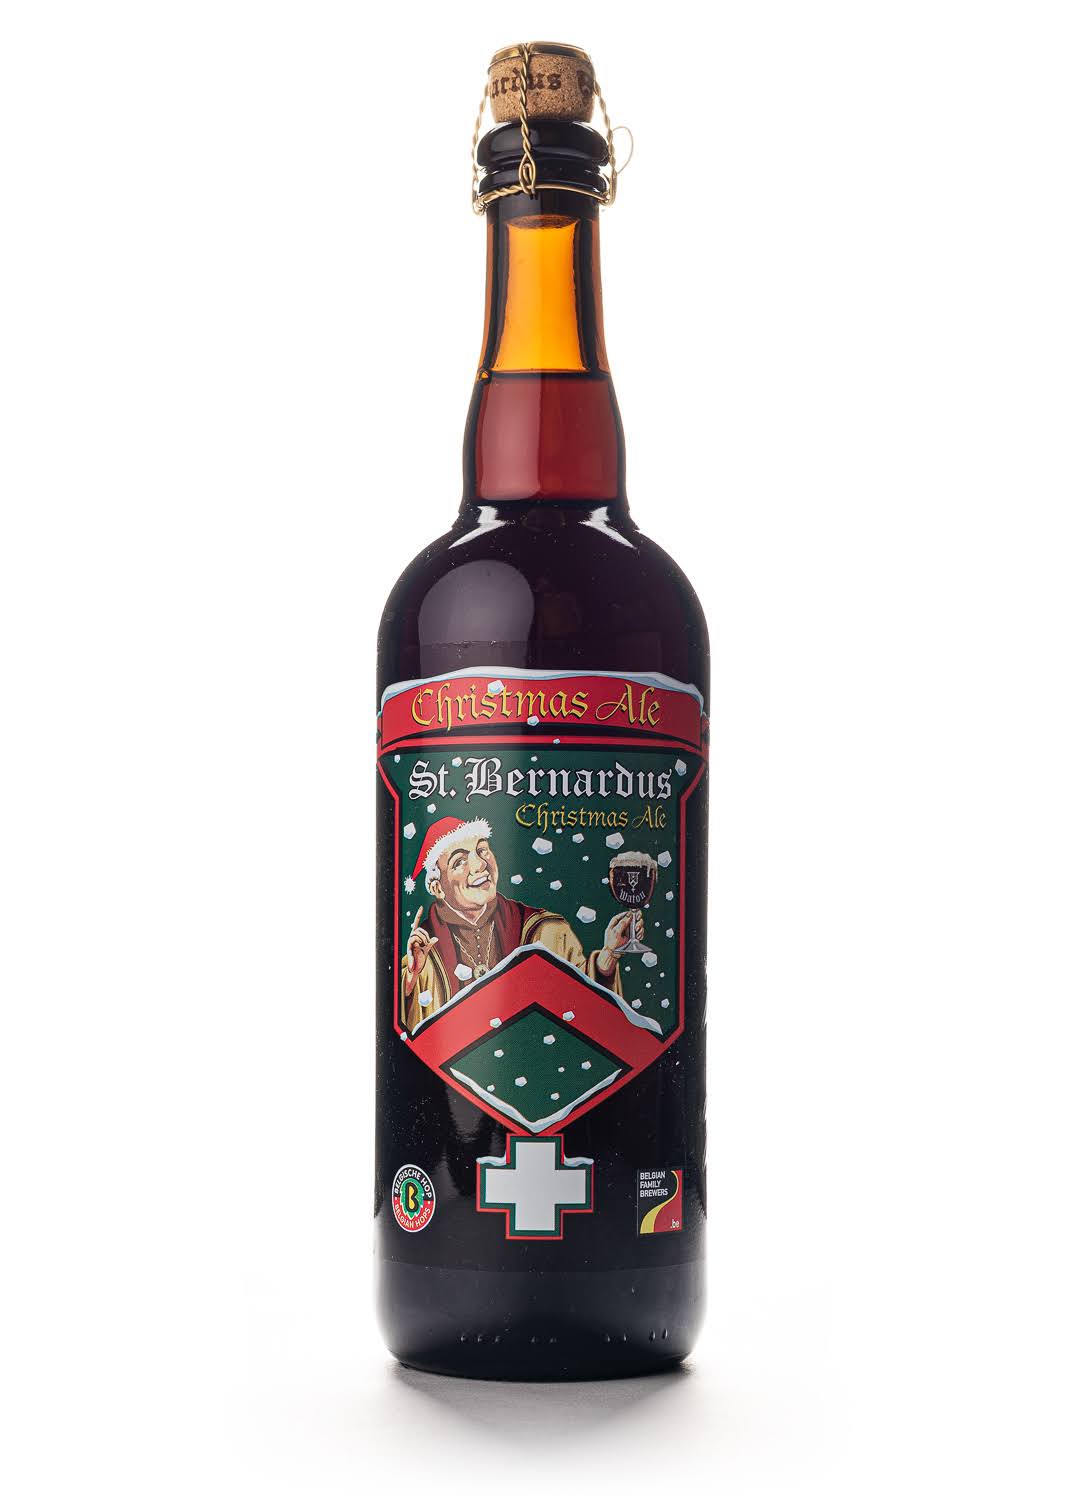 St. Bernardus Christmas Ale - 25.4 fl oz bottle